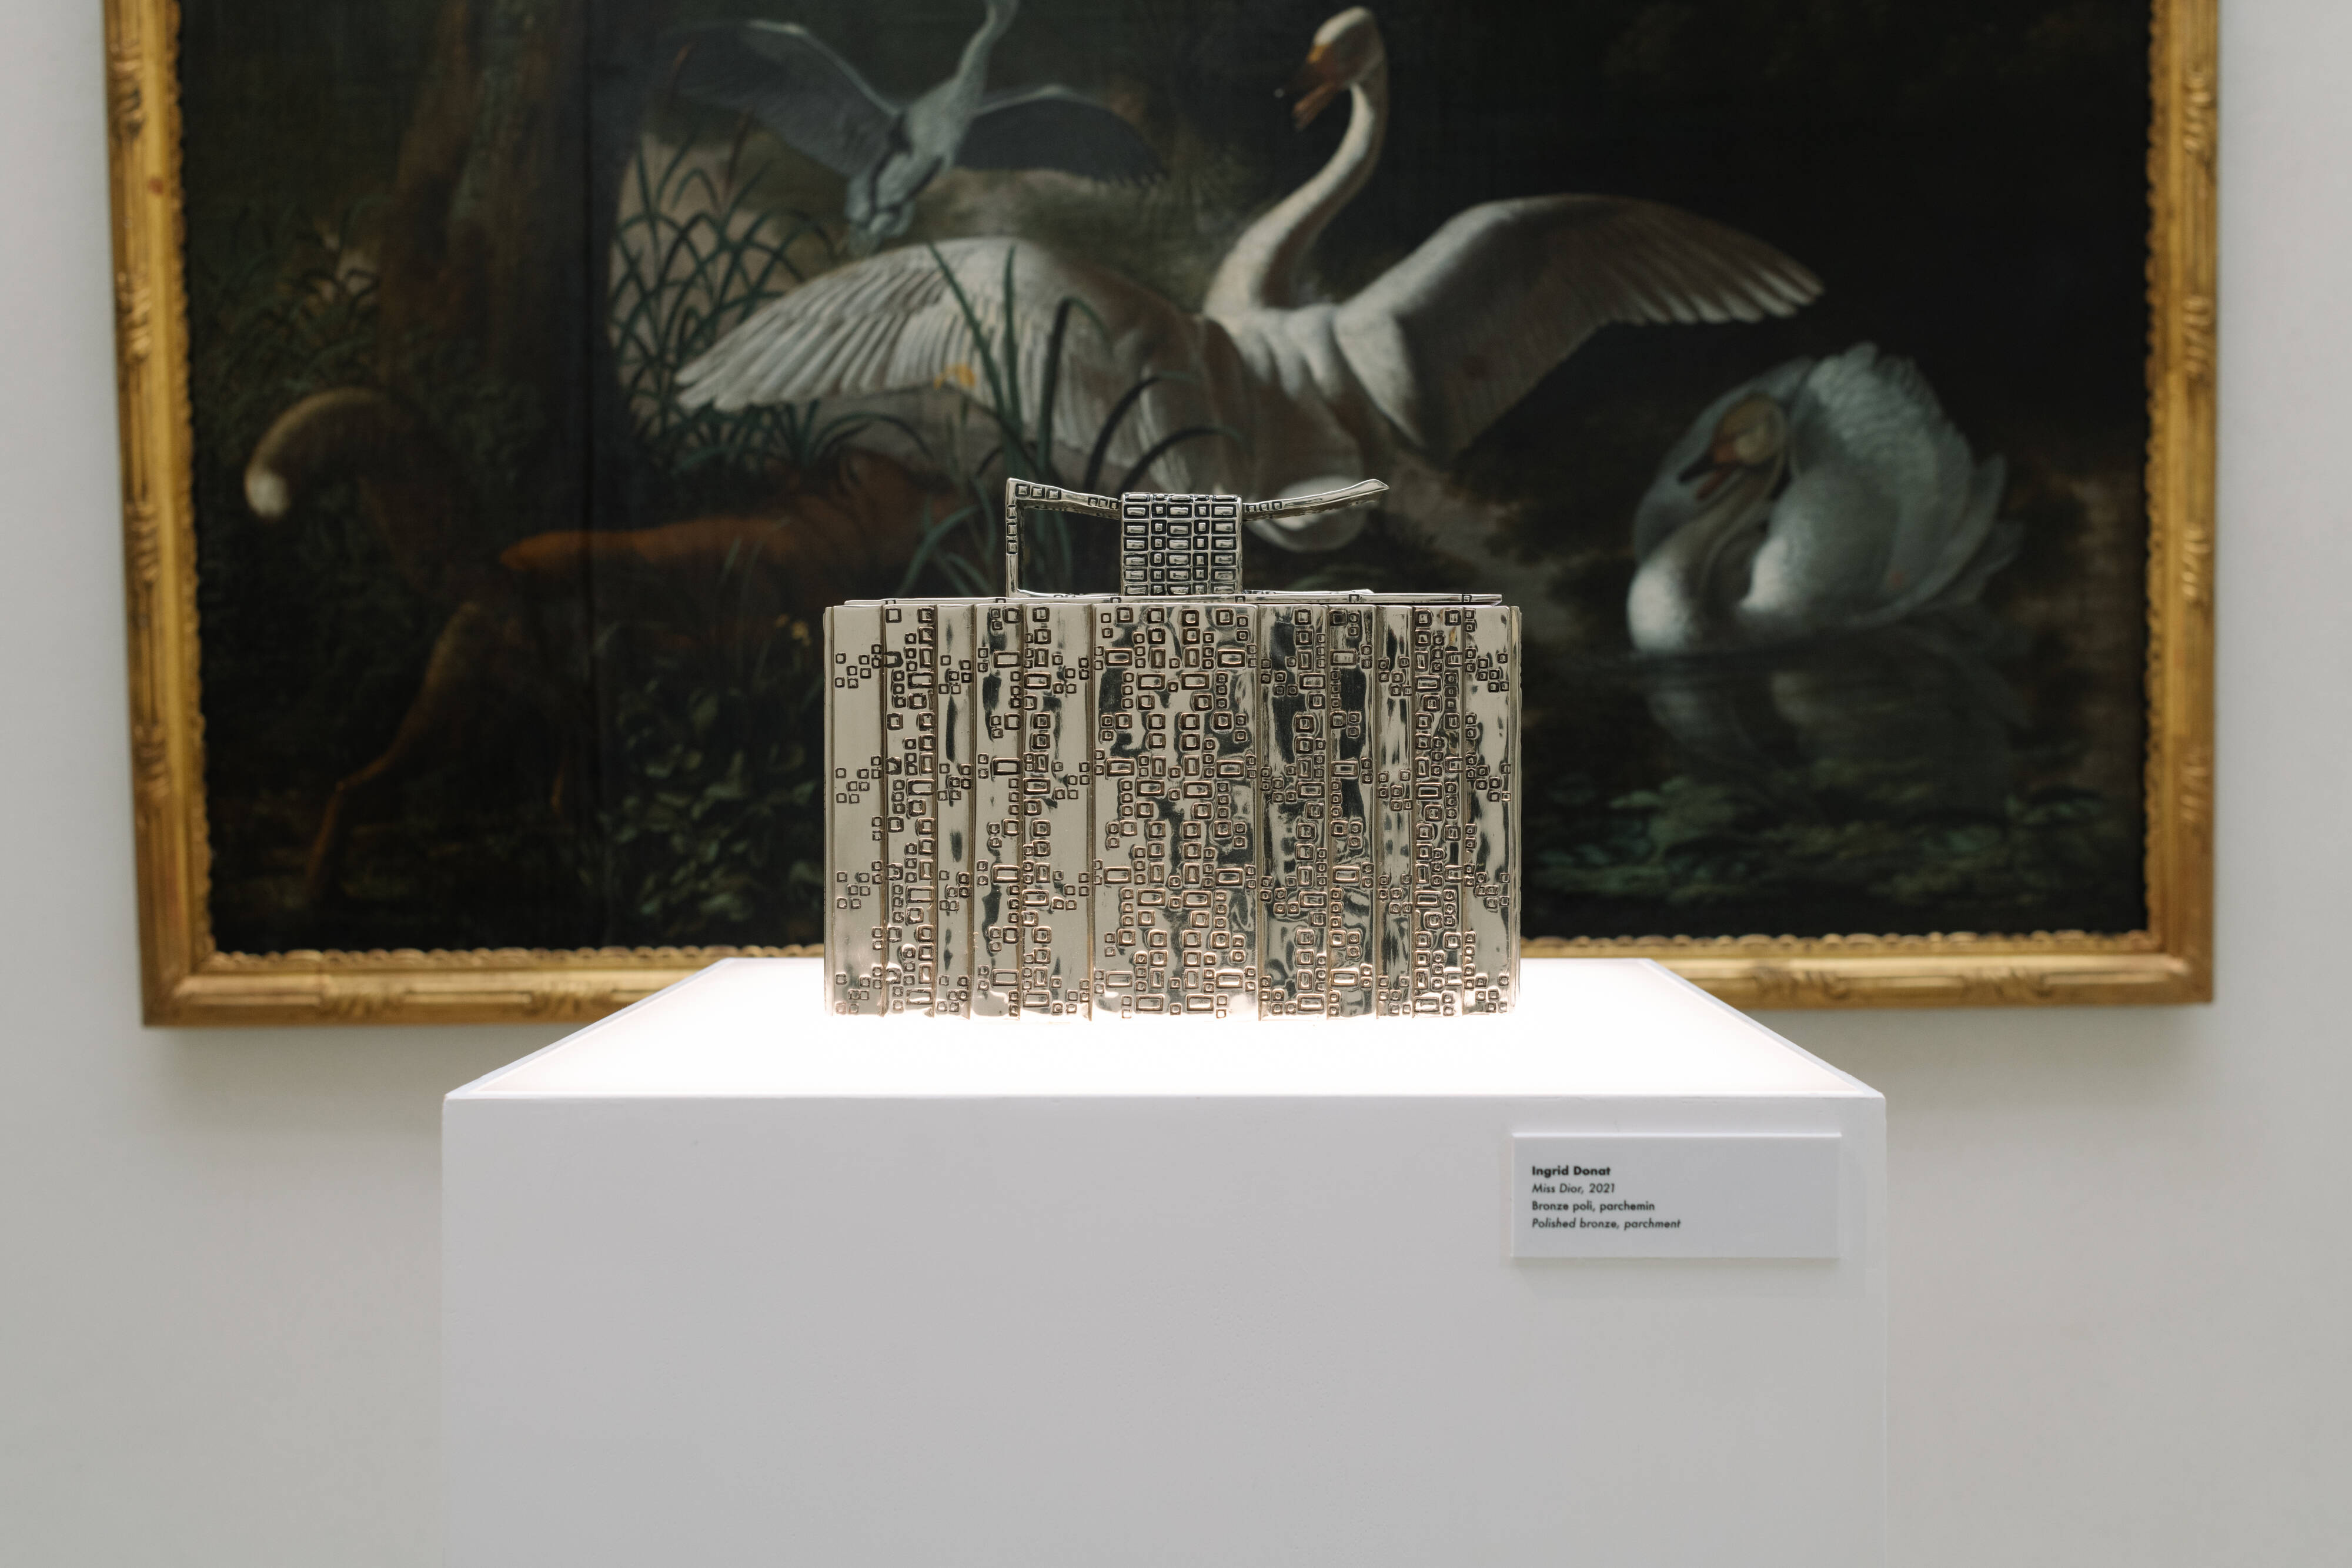 La Colle noire : le havre de luxe et de beauté imaginé par Christian Dior  se visite enfin - Elle